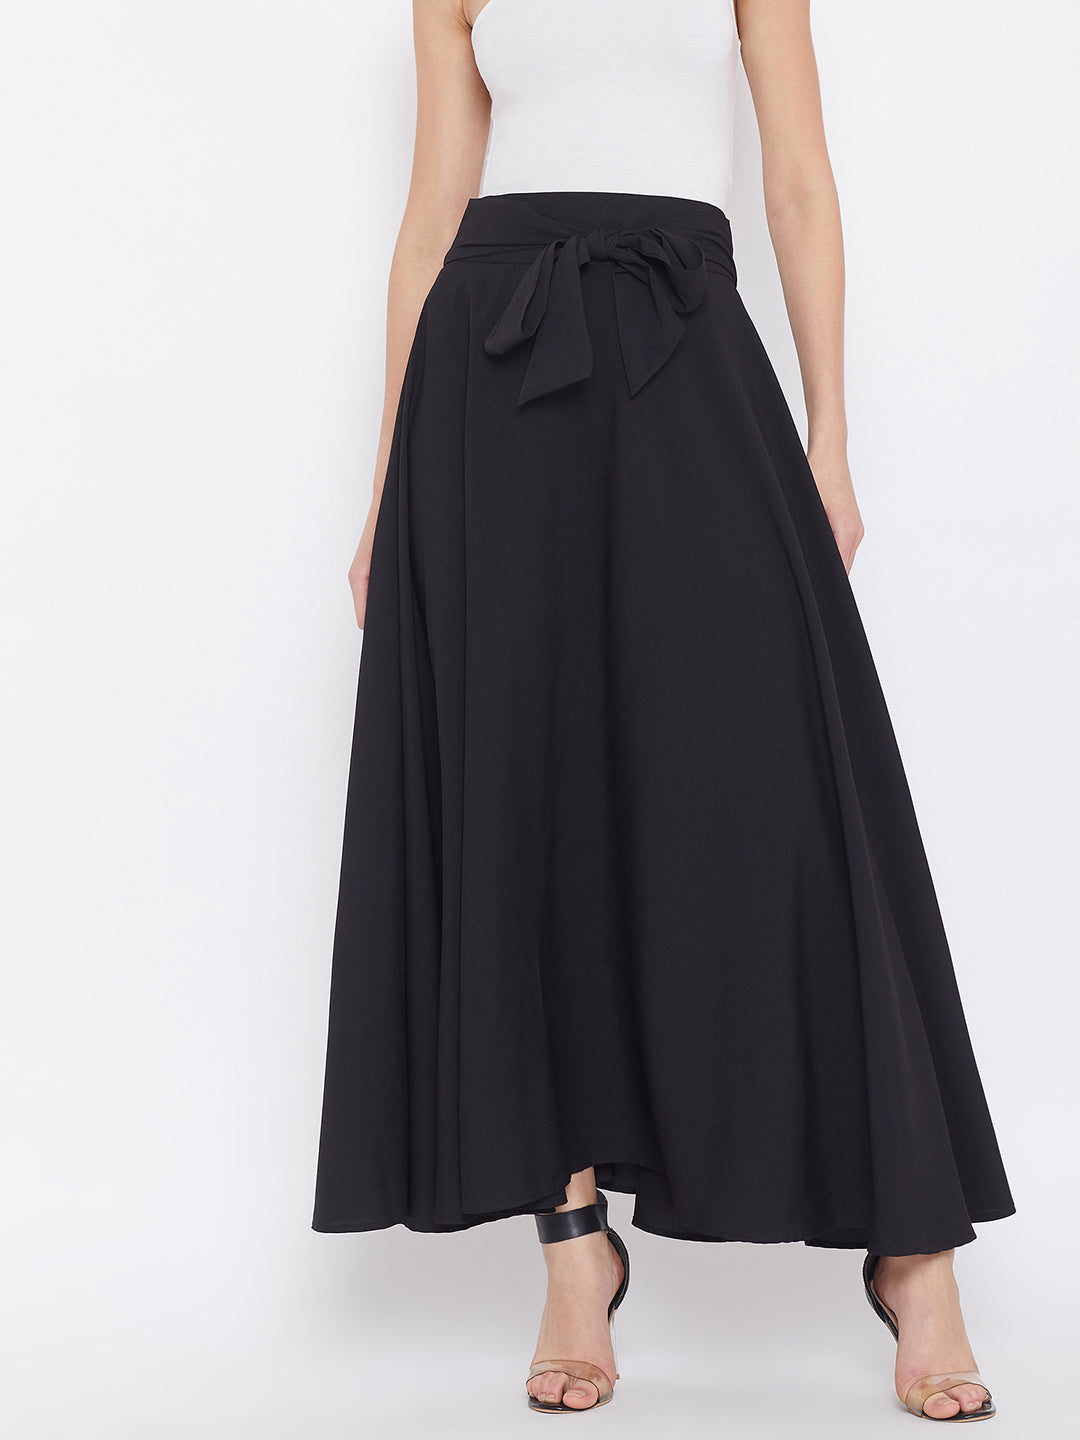 Berrylush Women Solid Black Bow-Tie High-Waist Maxi Skirt